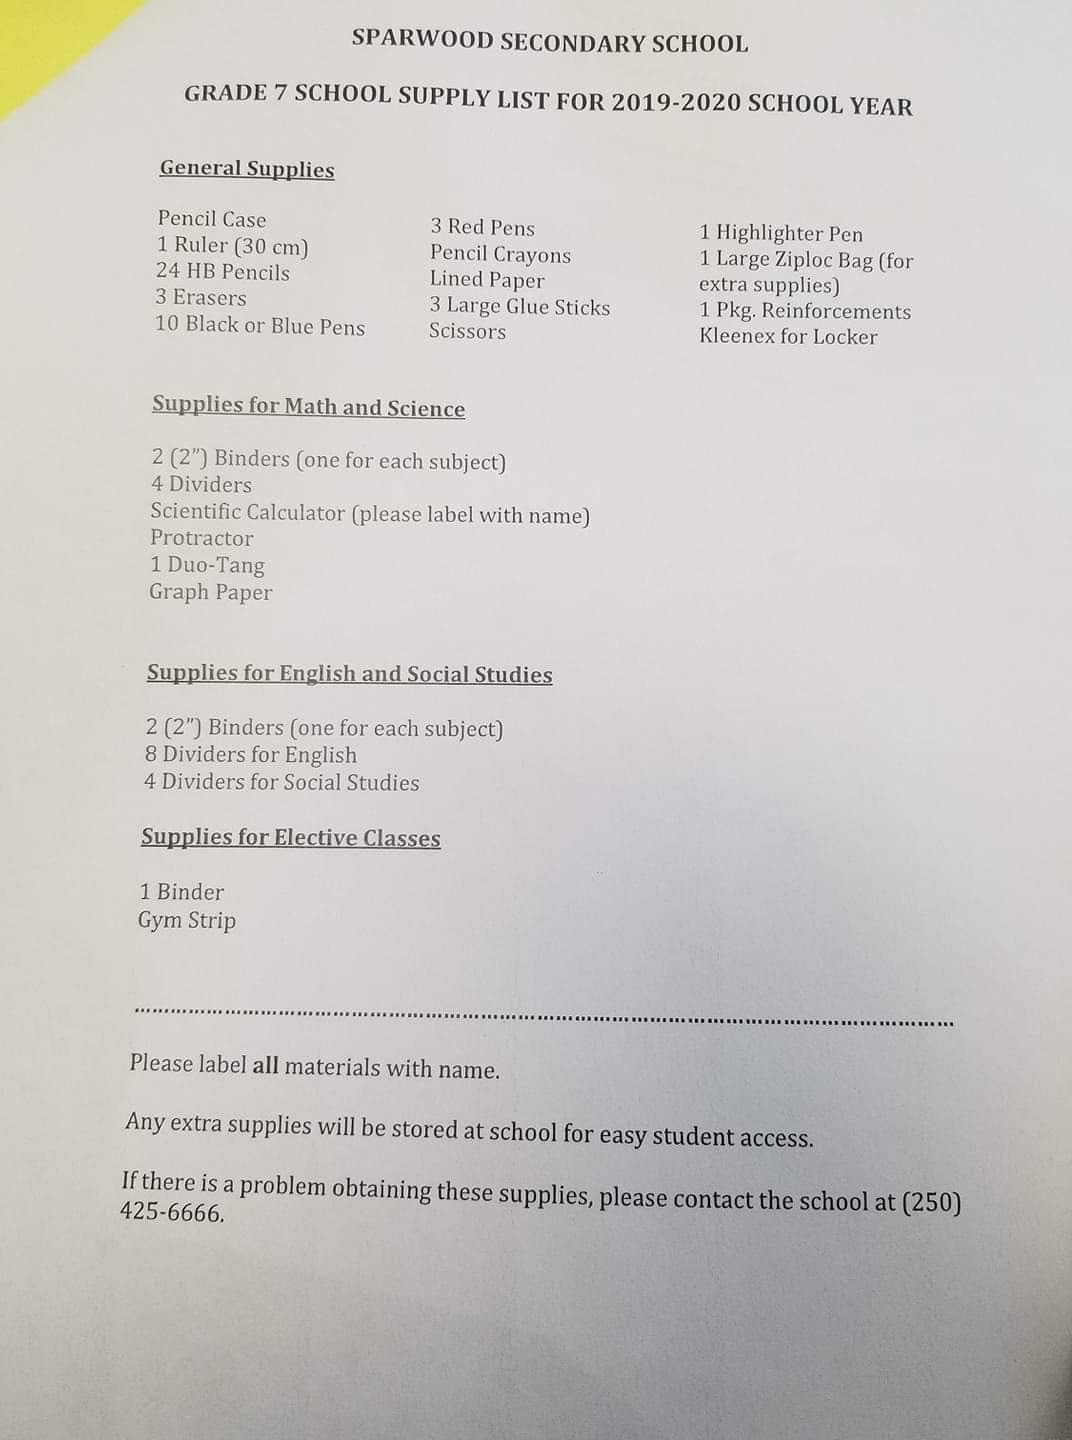 Grade 7 Supply List.jpg